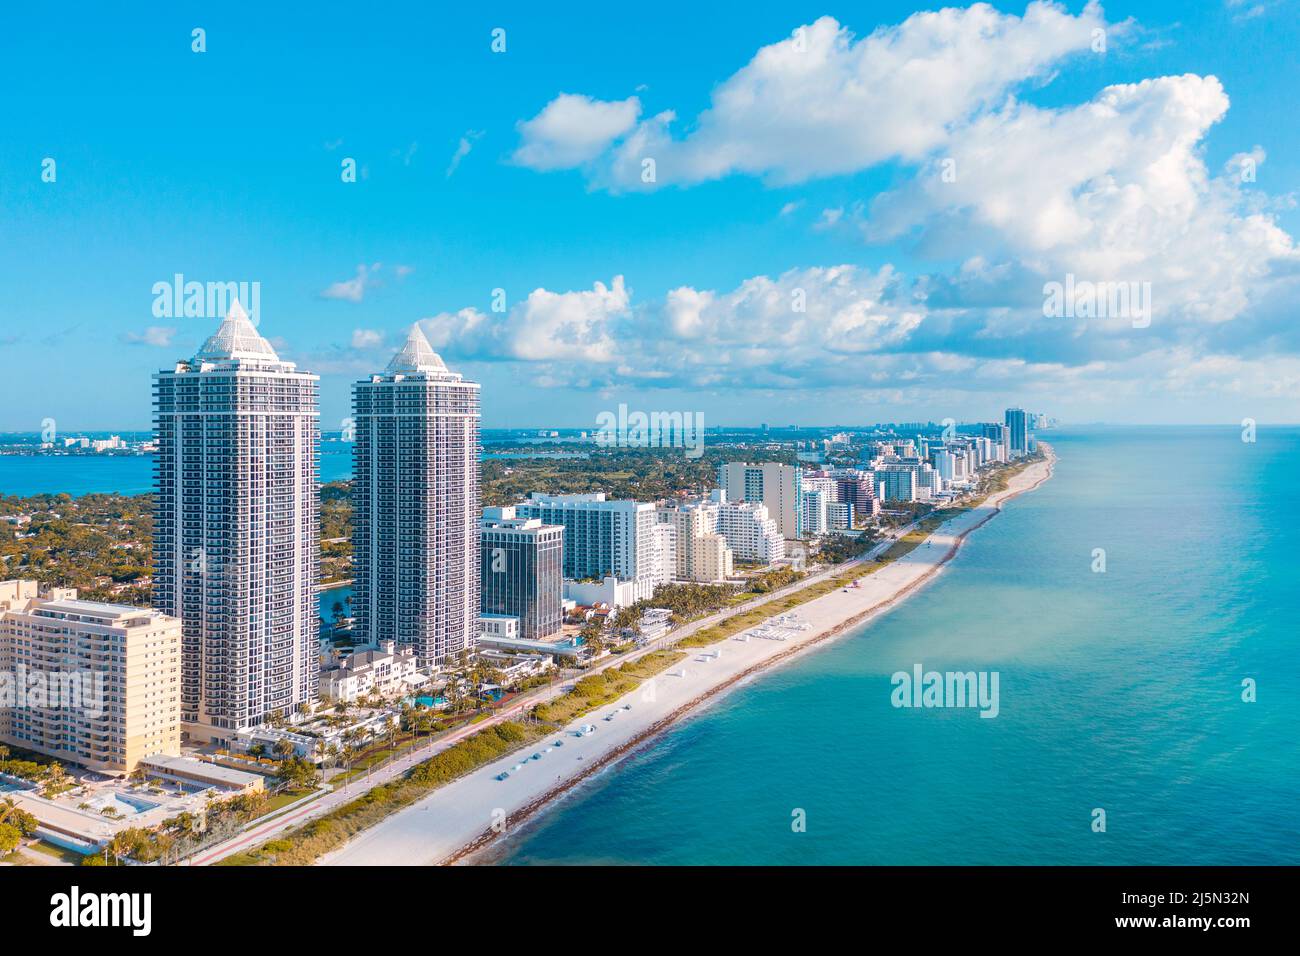 Luxury real estate in Miami Beach, Florida Stock Photo